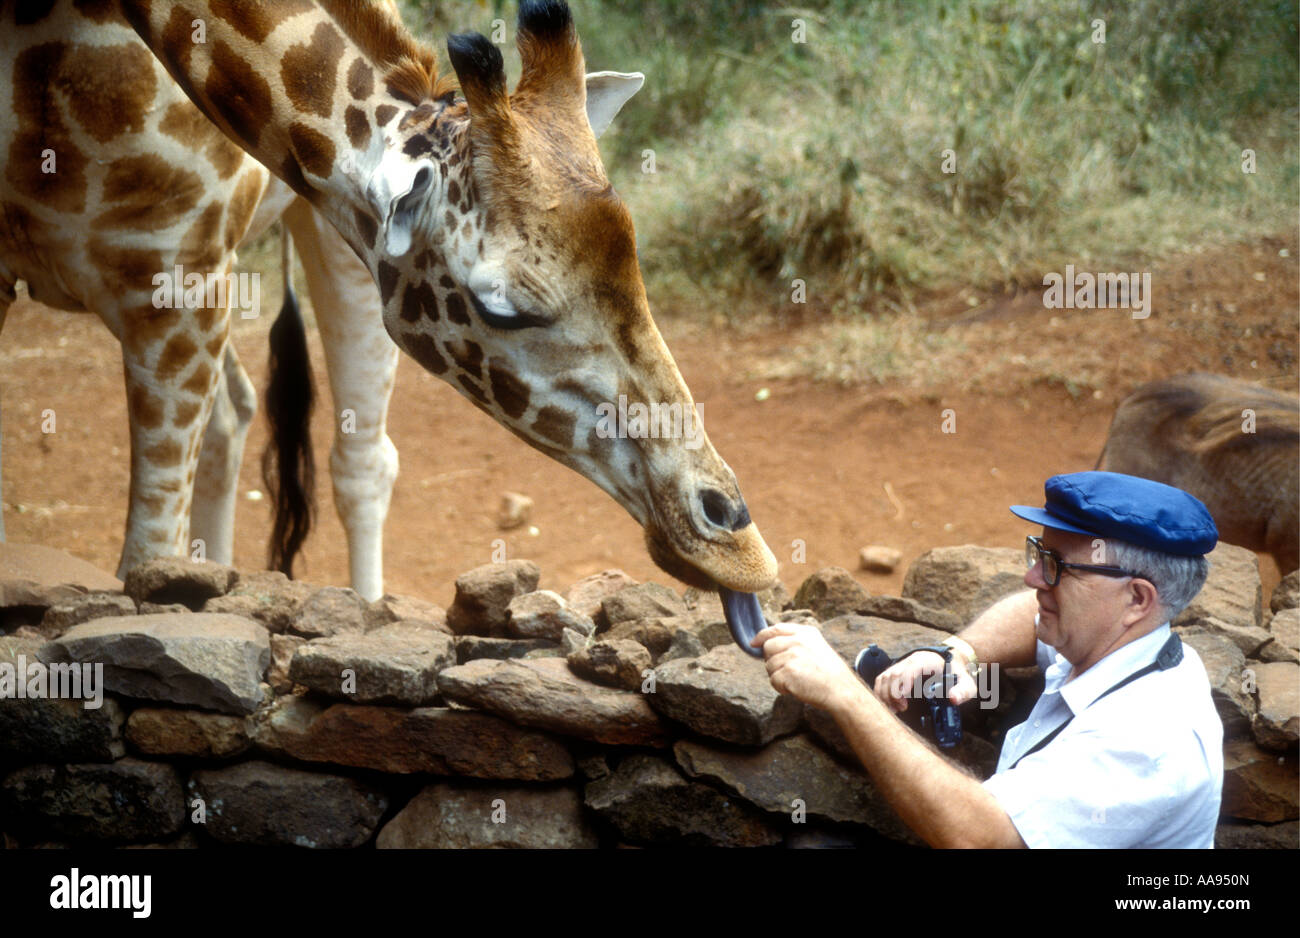 Girafe Rothschild s'être nourris par un homme au tourisme blanc Girafe Manor Nairobi Kenya Afrique de l'Est Banque D'Images